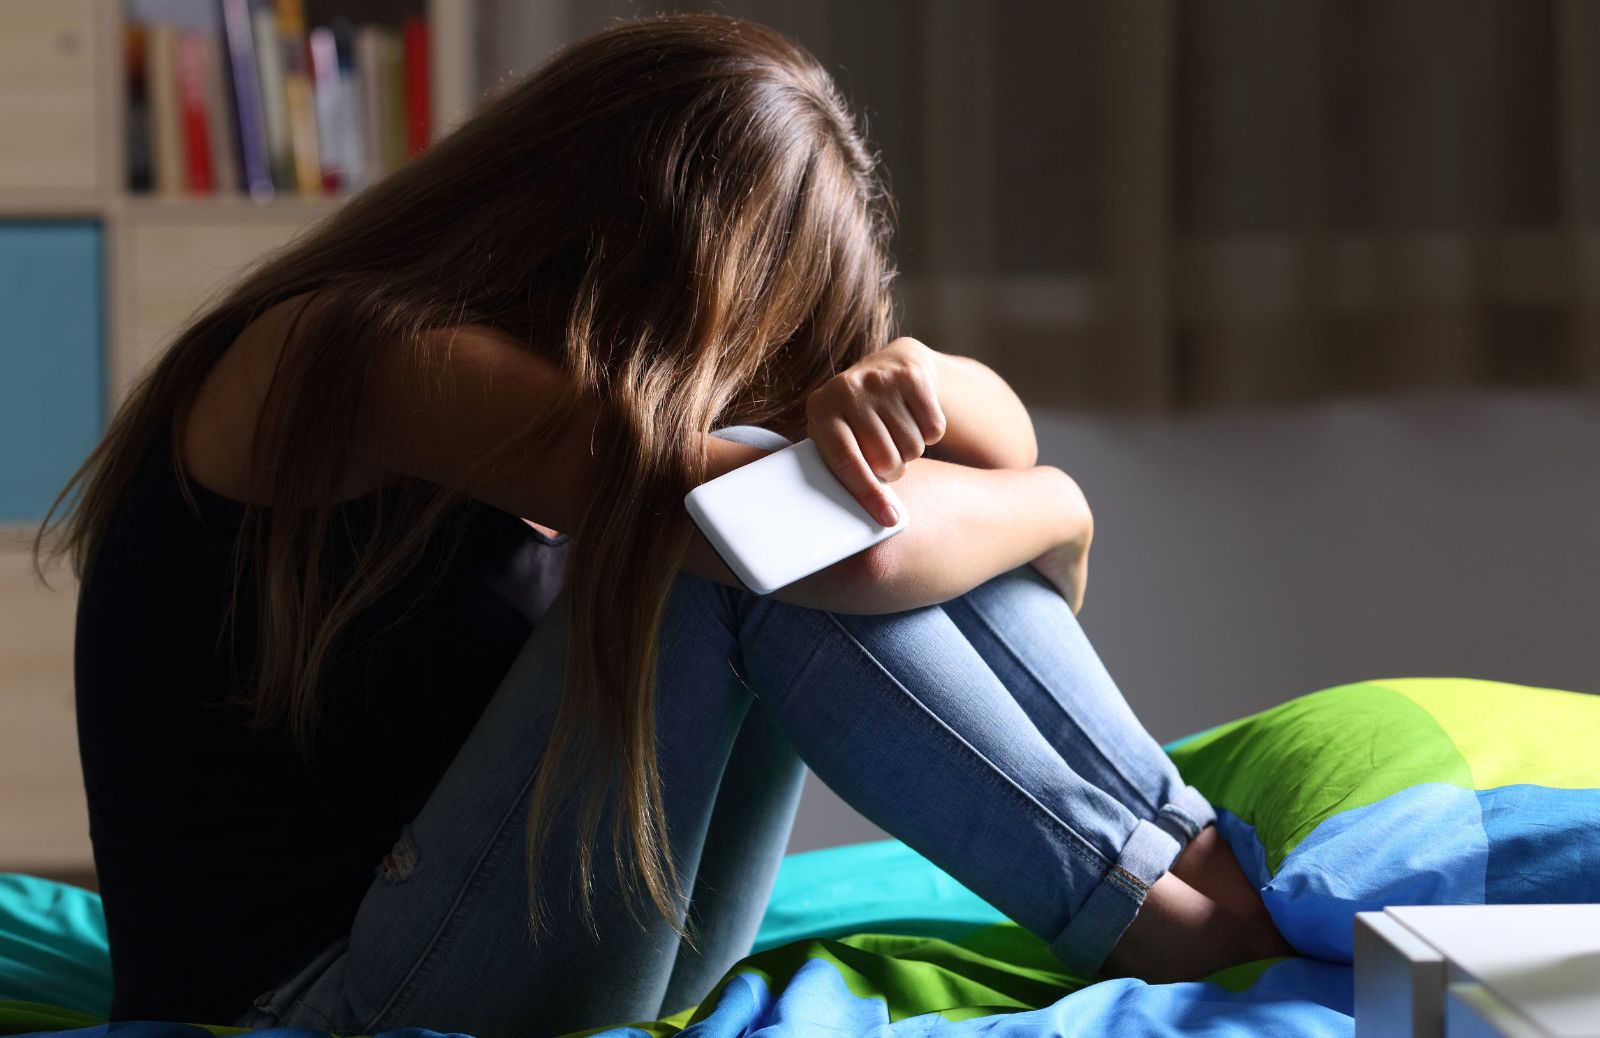 Controllate i cellulari dei bambini: pericolo bullismo e cyberbullismo